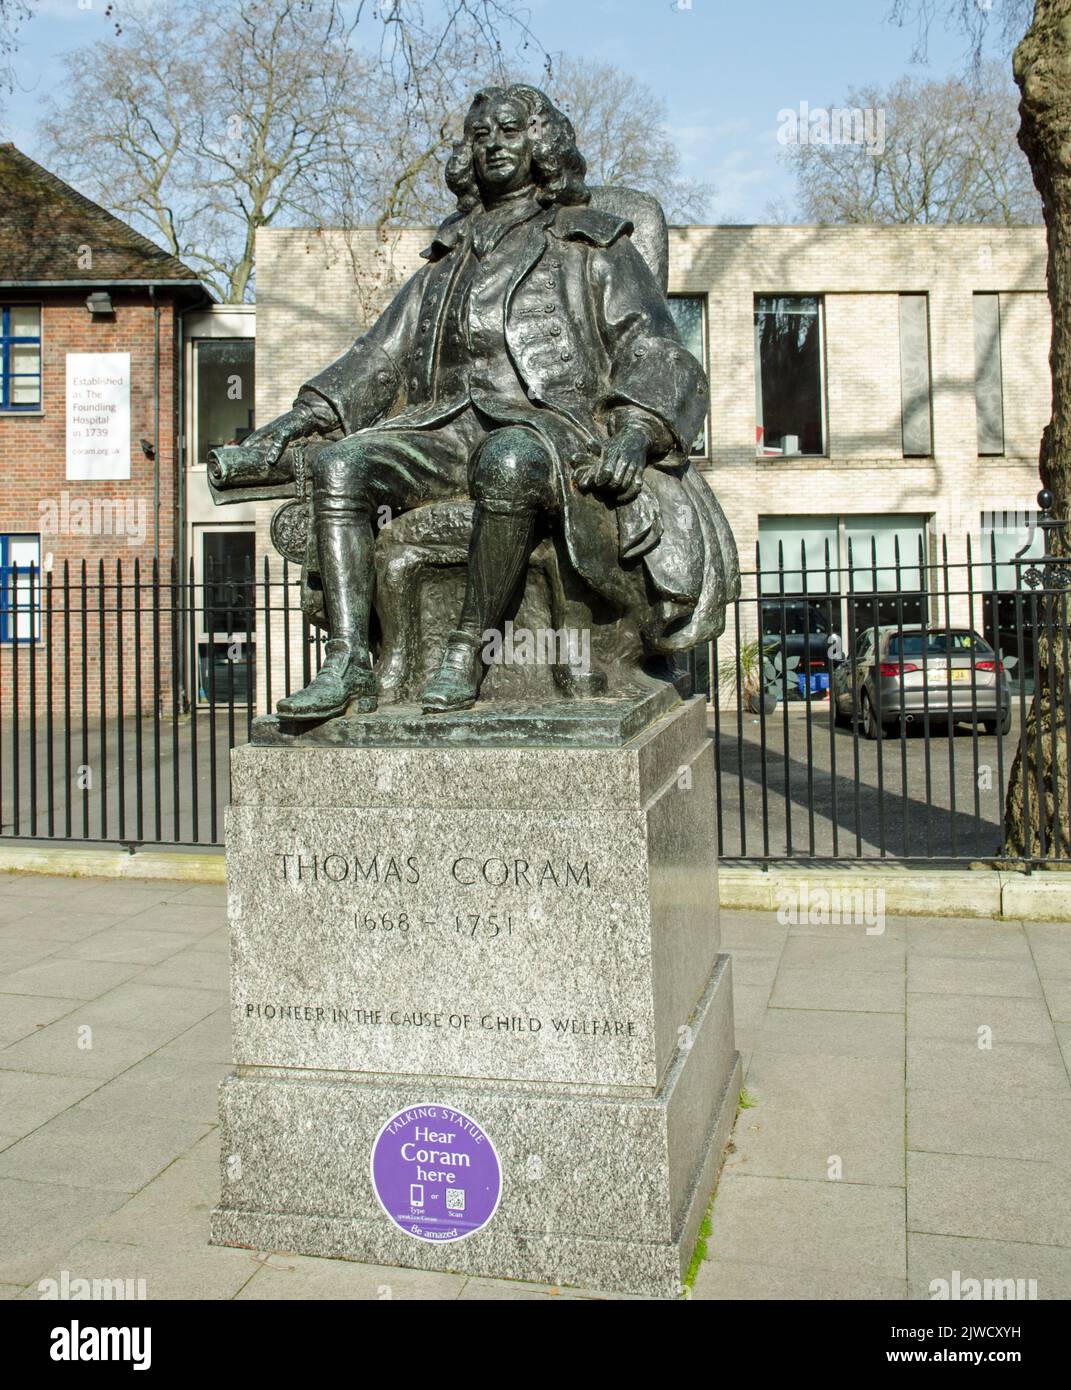 Statua storica del filantropo e fondatore della carità dei bambini Thomas Coram. Il Signore georgiano si occupava dei bambini svantaggiati nel Foto Stock